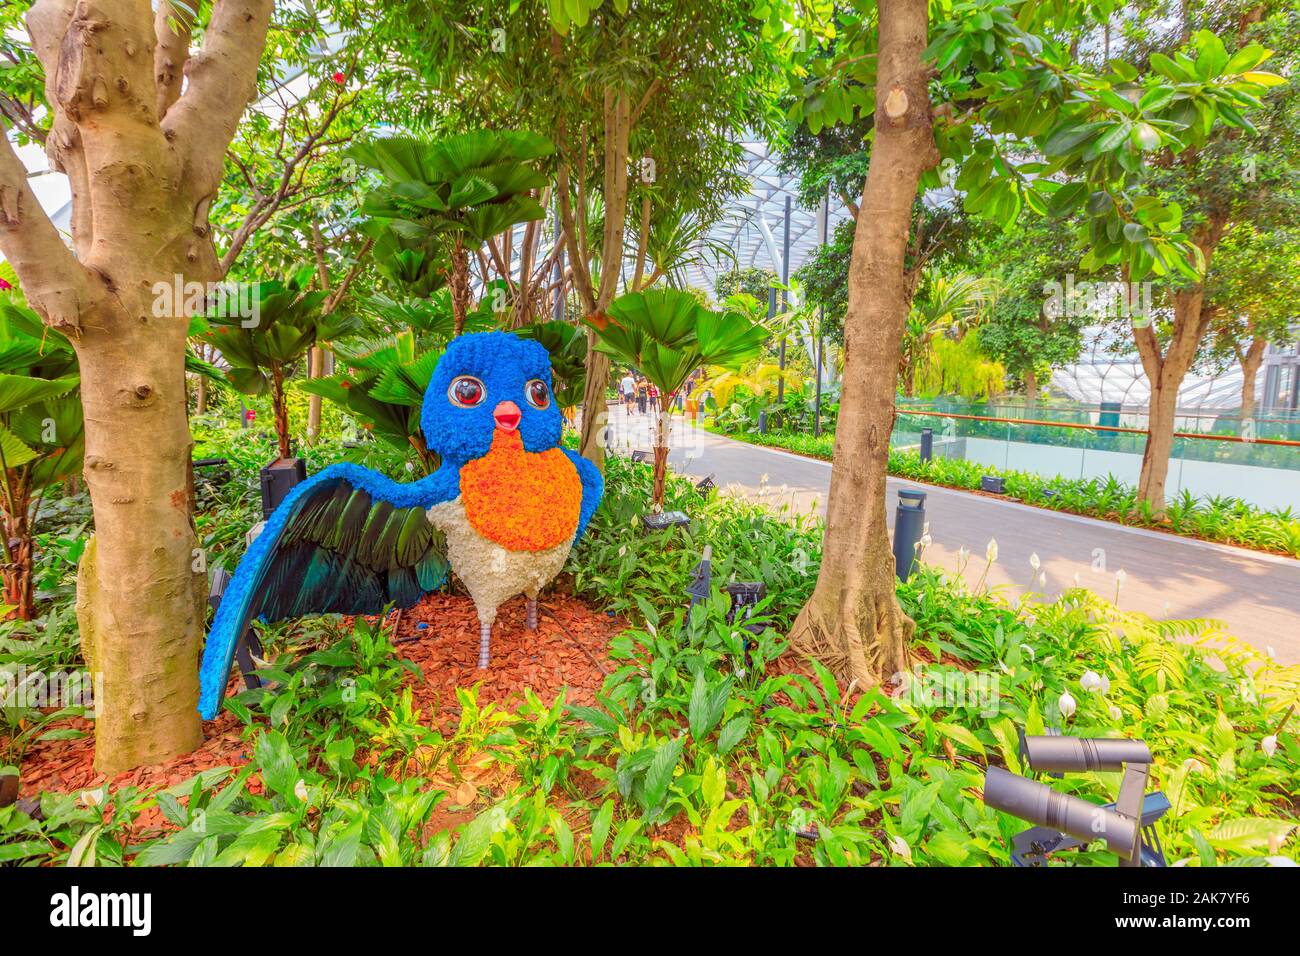 Singapur - Aug 8, 2019: Robin Blume Skulptur, Formgehölze Spaziergang am Vordach Park. Jewel Changi Airport ist ein Natur-themed mit Gärten, Sehenswürdigkeiten, ein Stockfoto